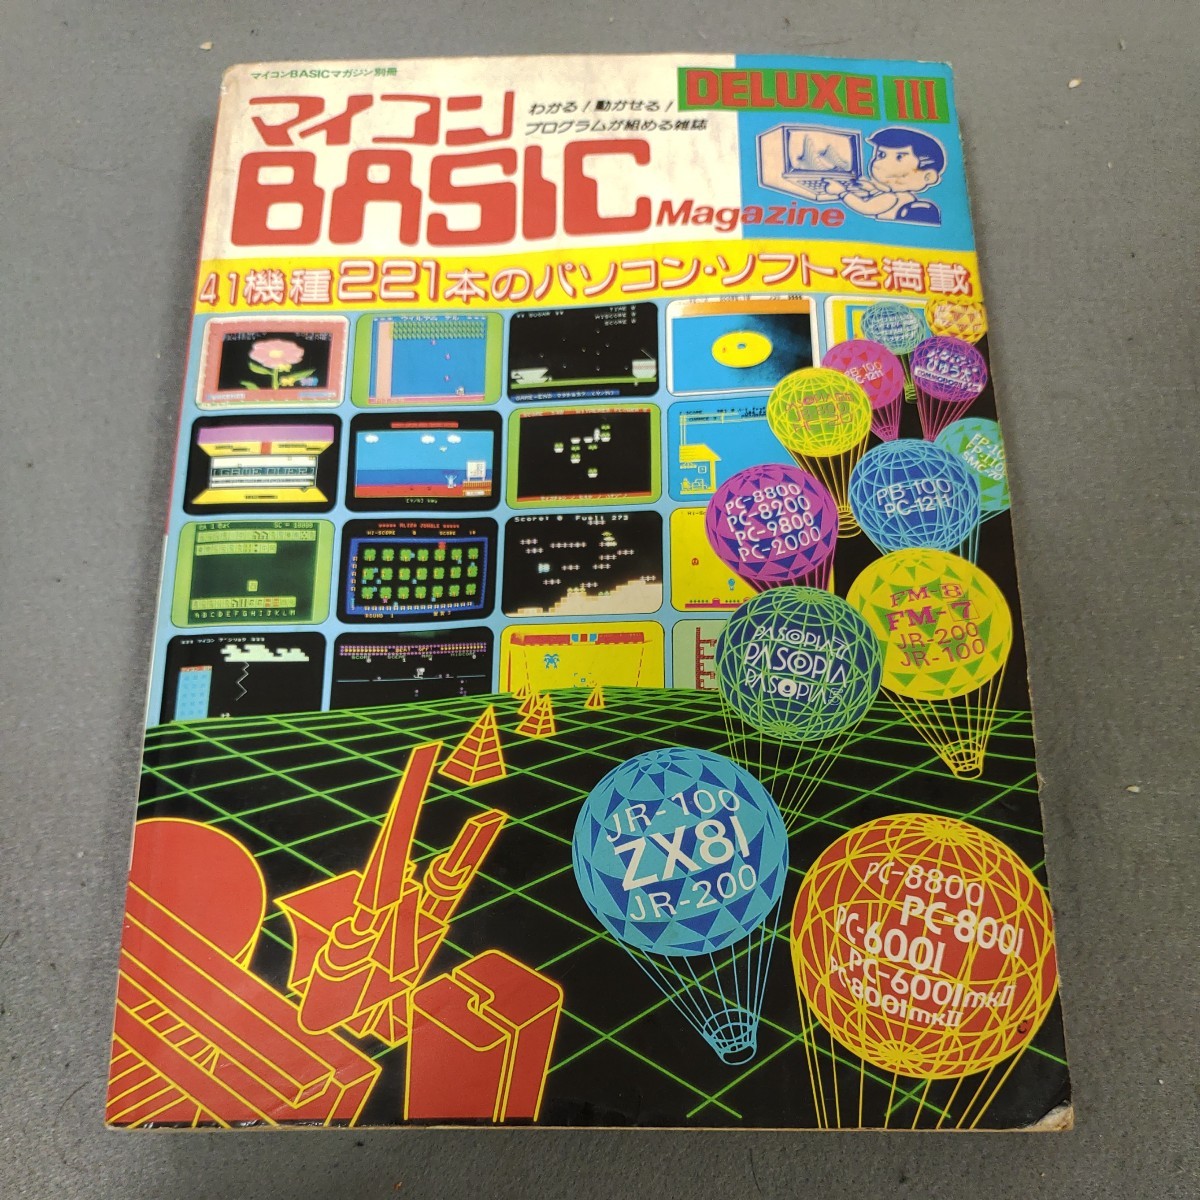  microcomputer BASIC журнал * Deluxe 3* компьютернные игры * in беж da-* программирование * Showa 59 год выпуск * радиоволны газета фирма 